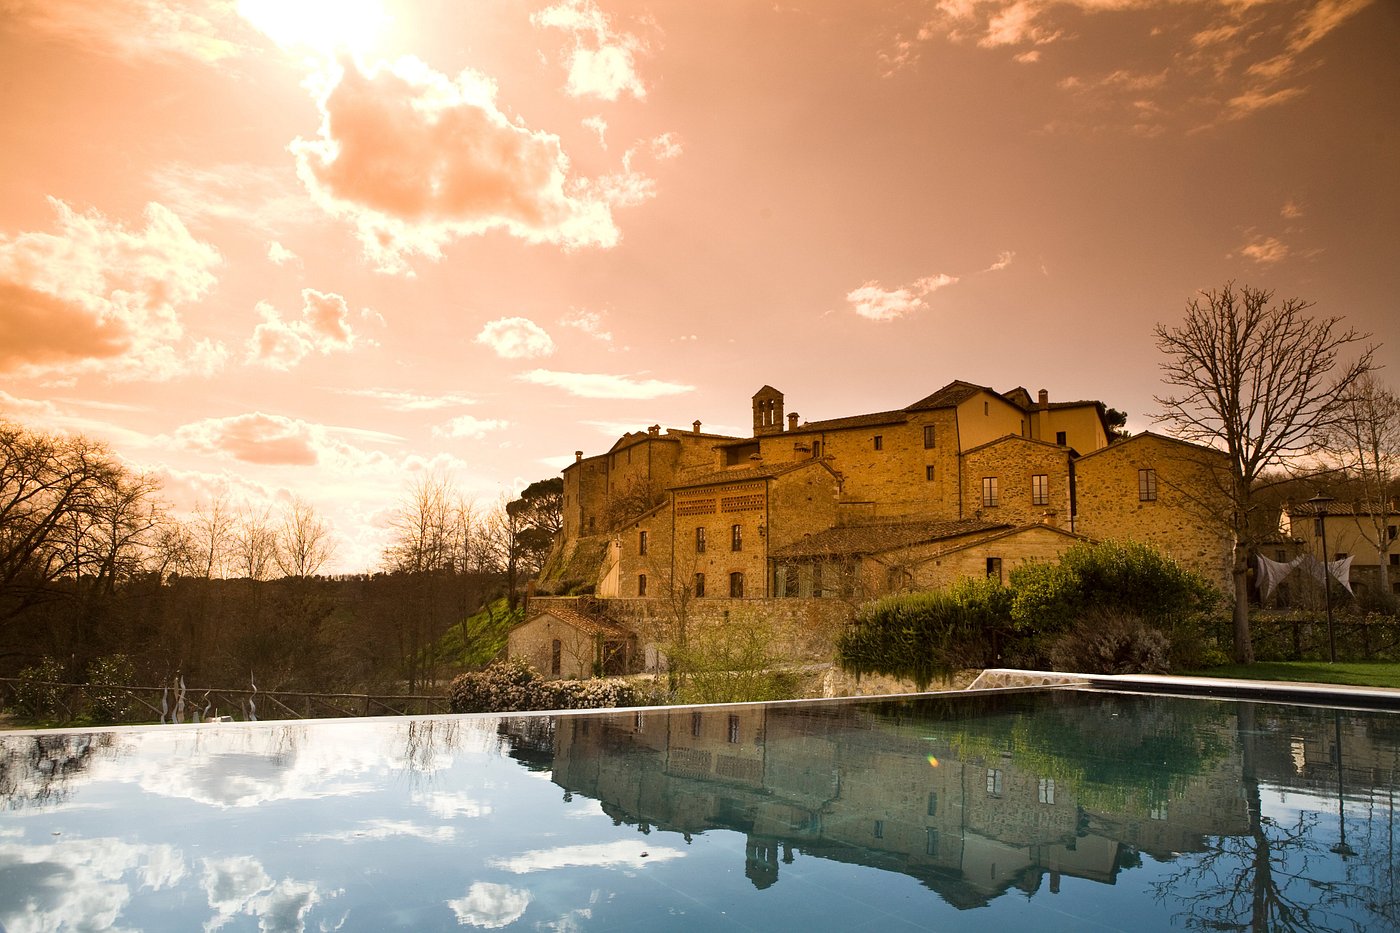 Piscine avec la vue sur le chateau de Monastero